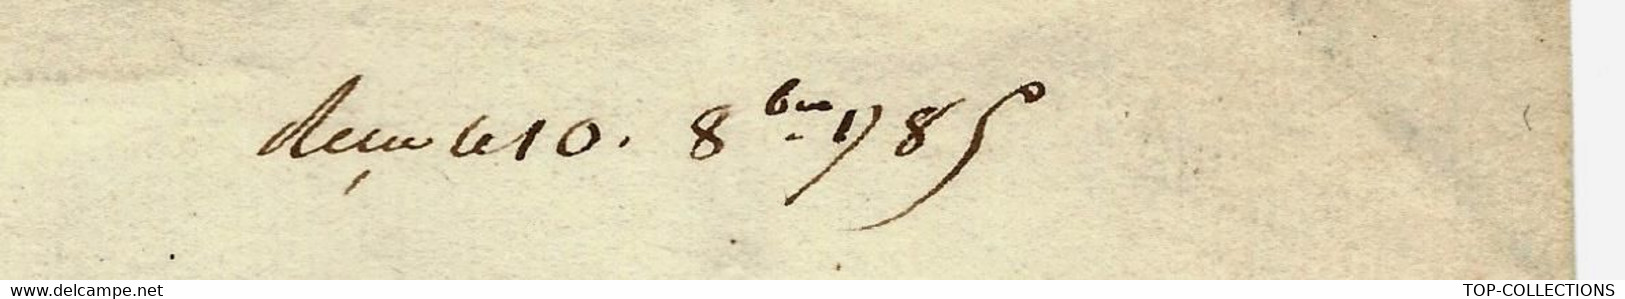 1785 De Cohenhague Danemark COMPAGNIE DANOISE DES INDES COPENHAGUE Lettre Signée Pour FOACHE LE HAVRE - Historische Documenten